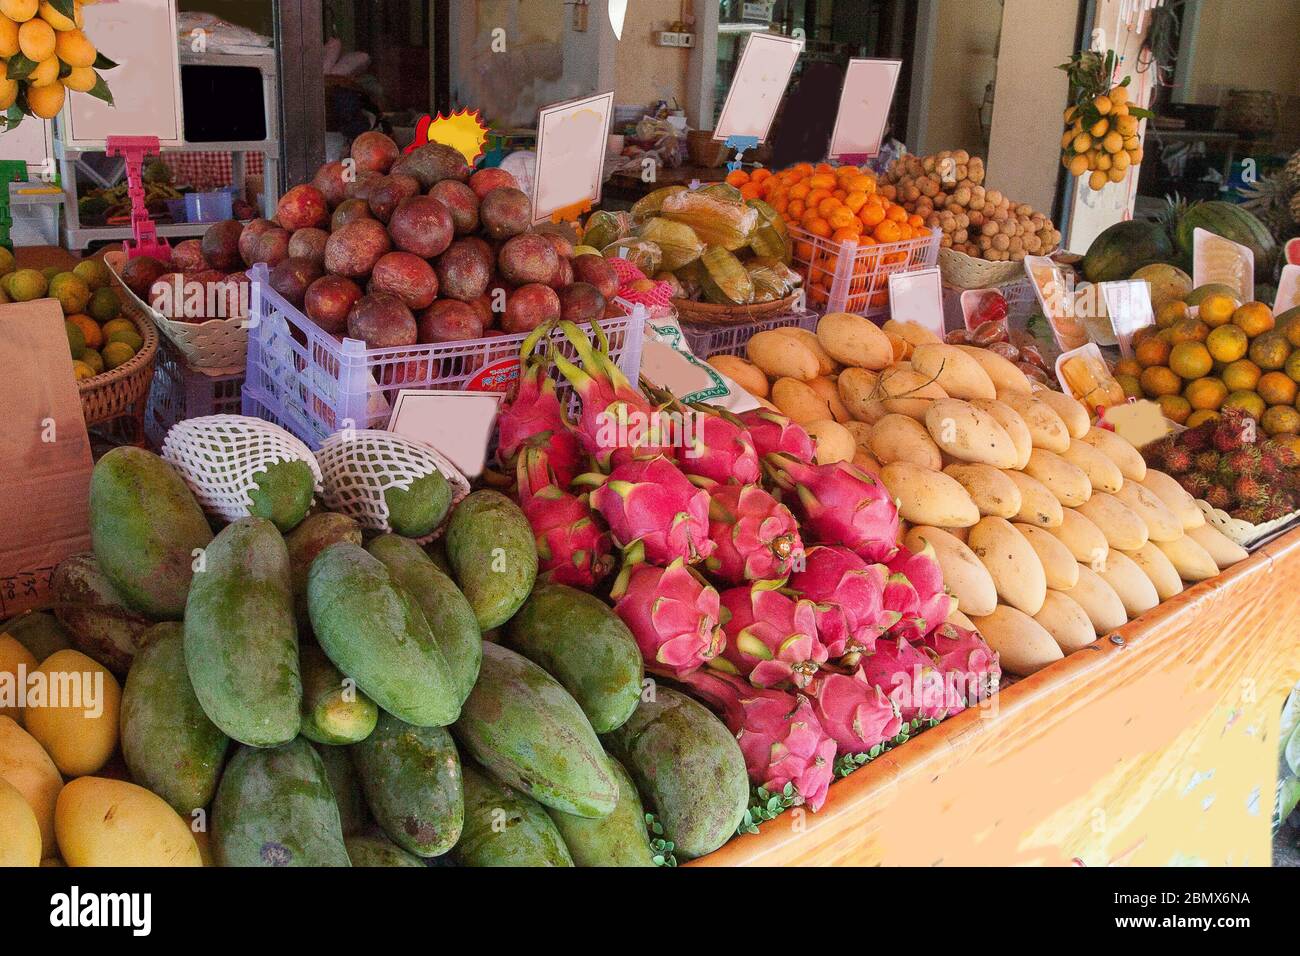 Comptoir de fruits avec mangue, longan, dragon, mangoustan, citrons, mandarines en Thaïlande. Commerce. Asie. Régime vert. Banque D'Images